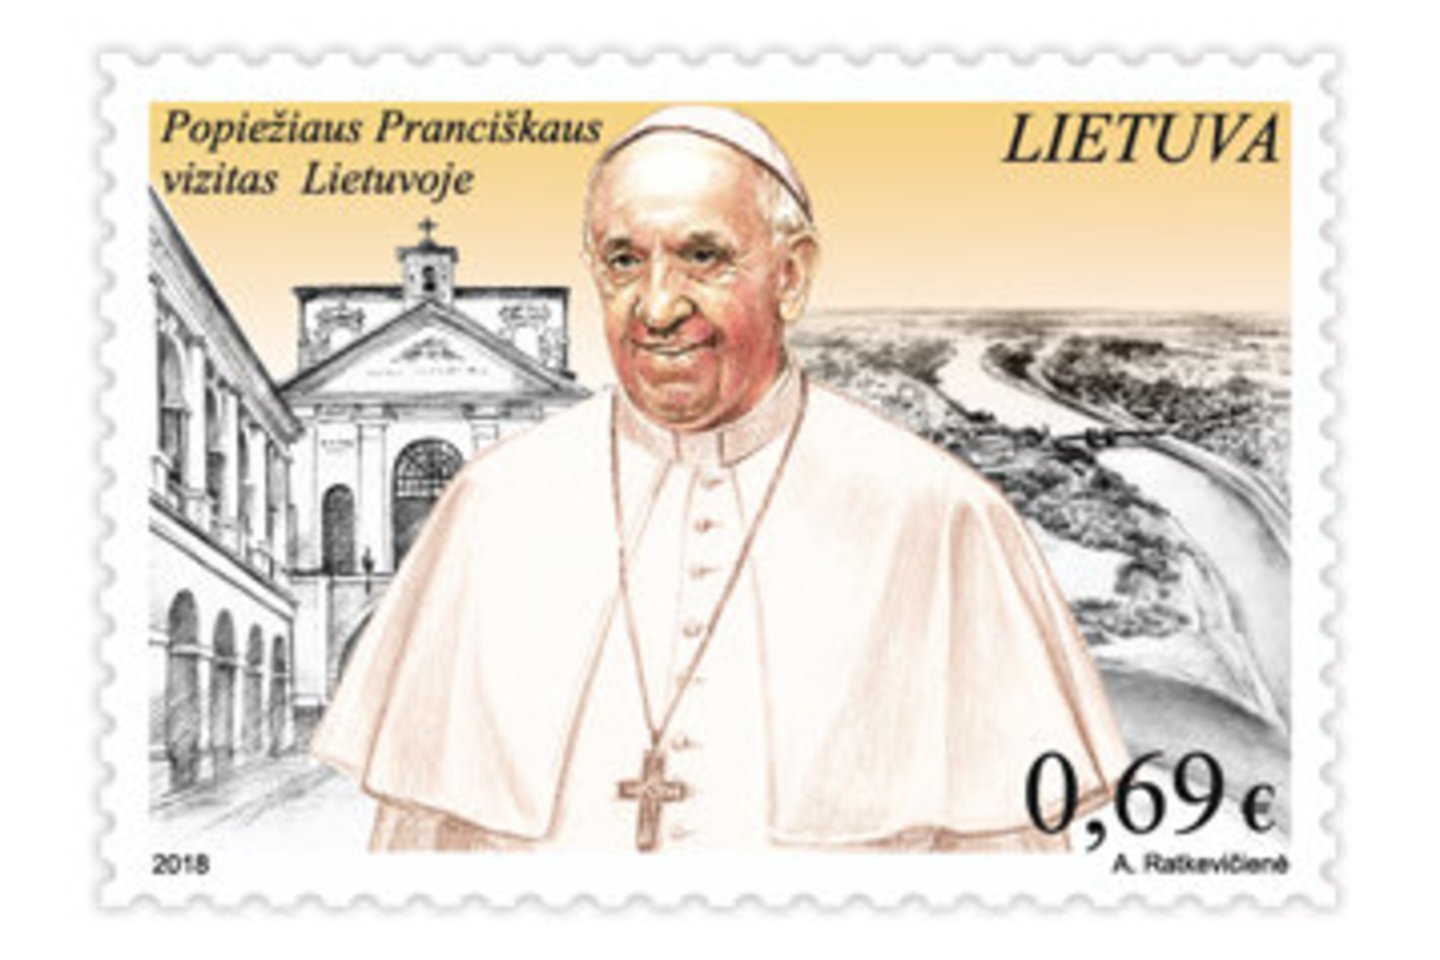  Gavus Vatikano sutikimą, po ilgos pertraukos išleidžiamas riboto tiražo pašto ženklas, skirtas Šventojo Tėvo vizitui Lietuvoje.<br> Lietuvos pašto nuotr.